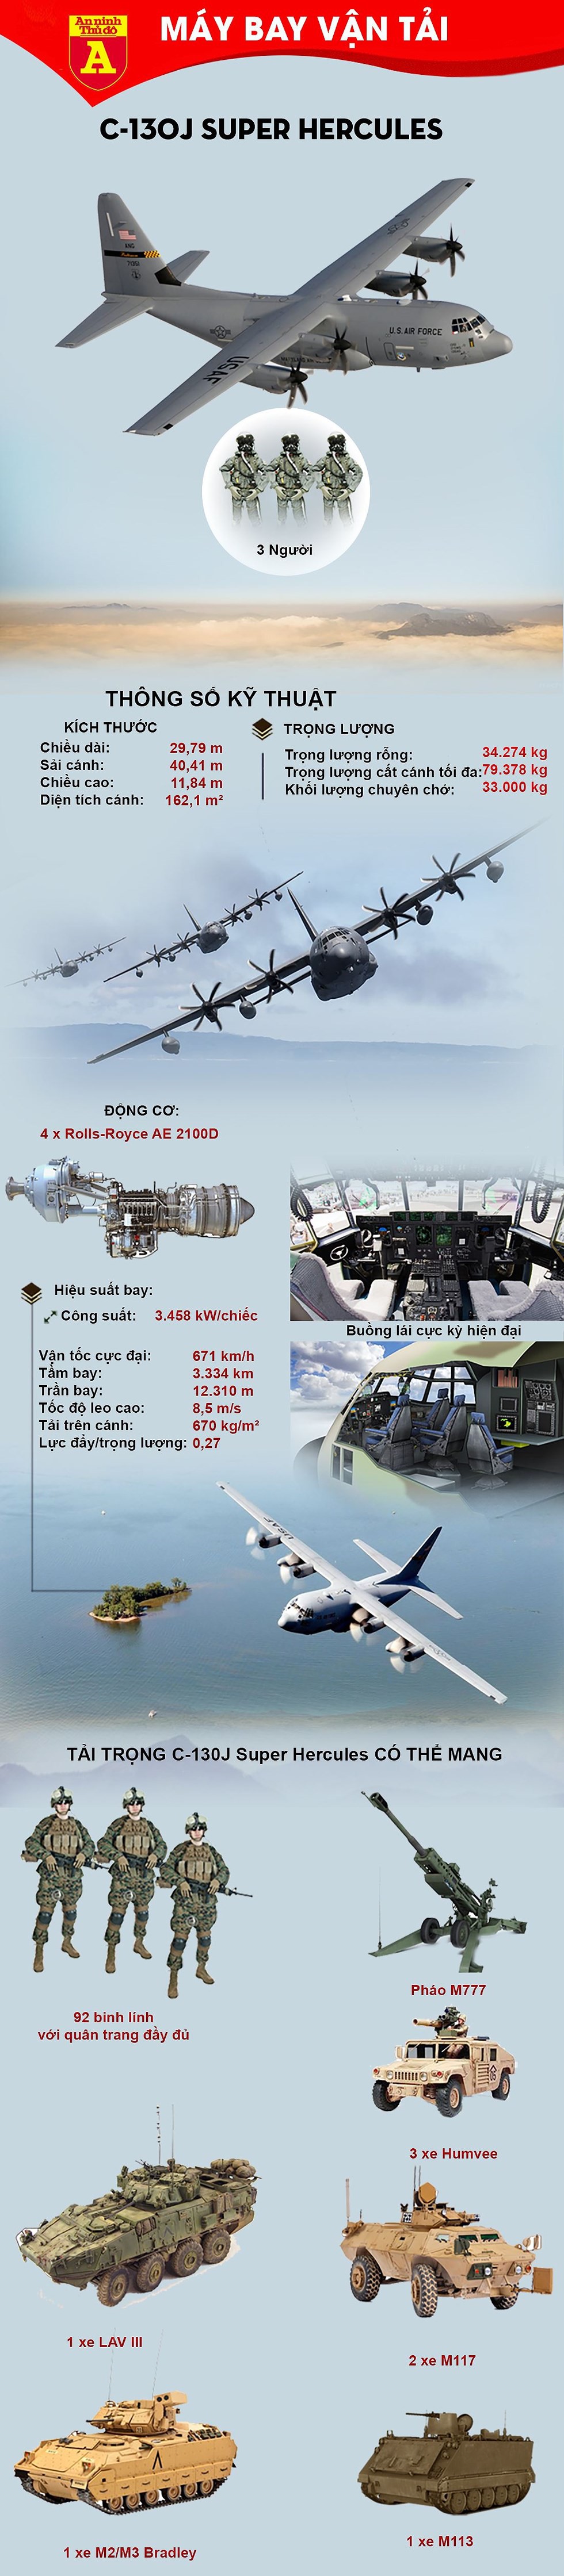 [Infographic] Không lạ khi Ba Lan hỏi Mỹ để mua "lực sĩ bầu trời" C-130J - Ảnh 1